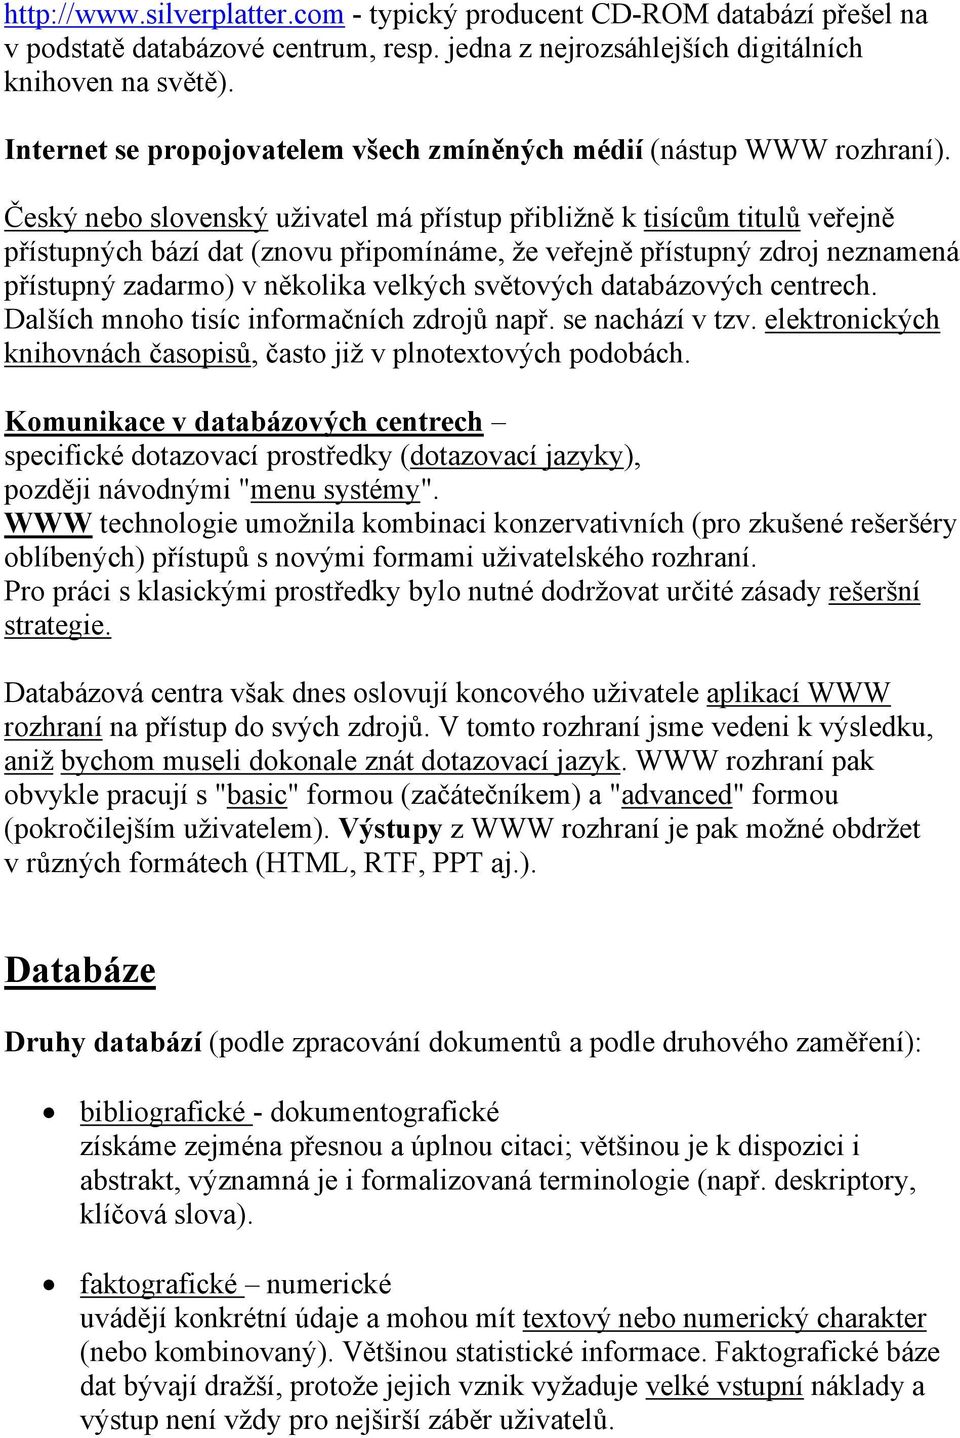 Český nebo slovenský uživatel má přístup přibližně k tisícům titulů veřejně přístupných bází dat (znovu připomínáme, že veřejně přístupný zdroj neznamená přístupný zadarmo) v několika velkých